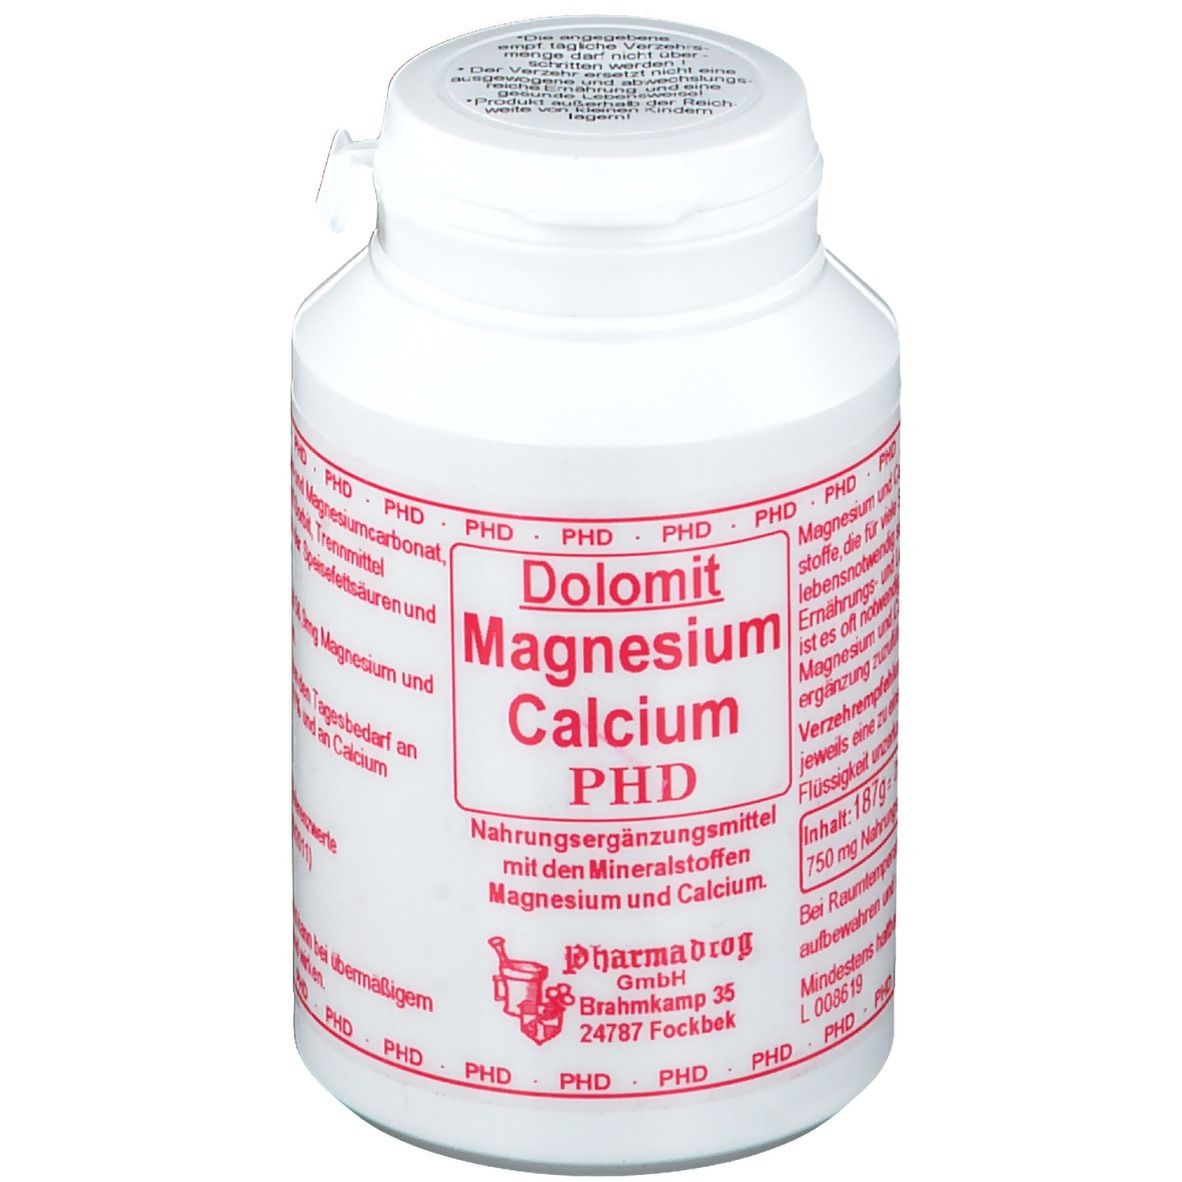 Dolomit Magnesium Calcium